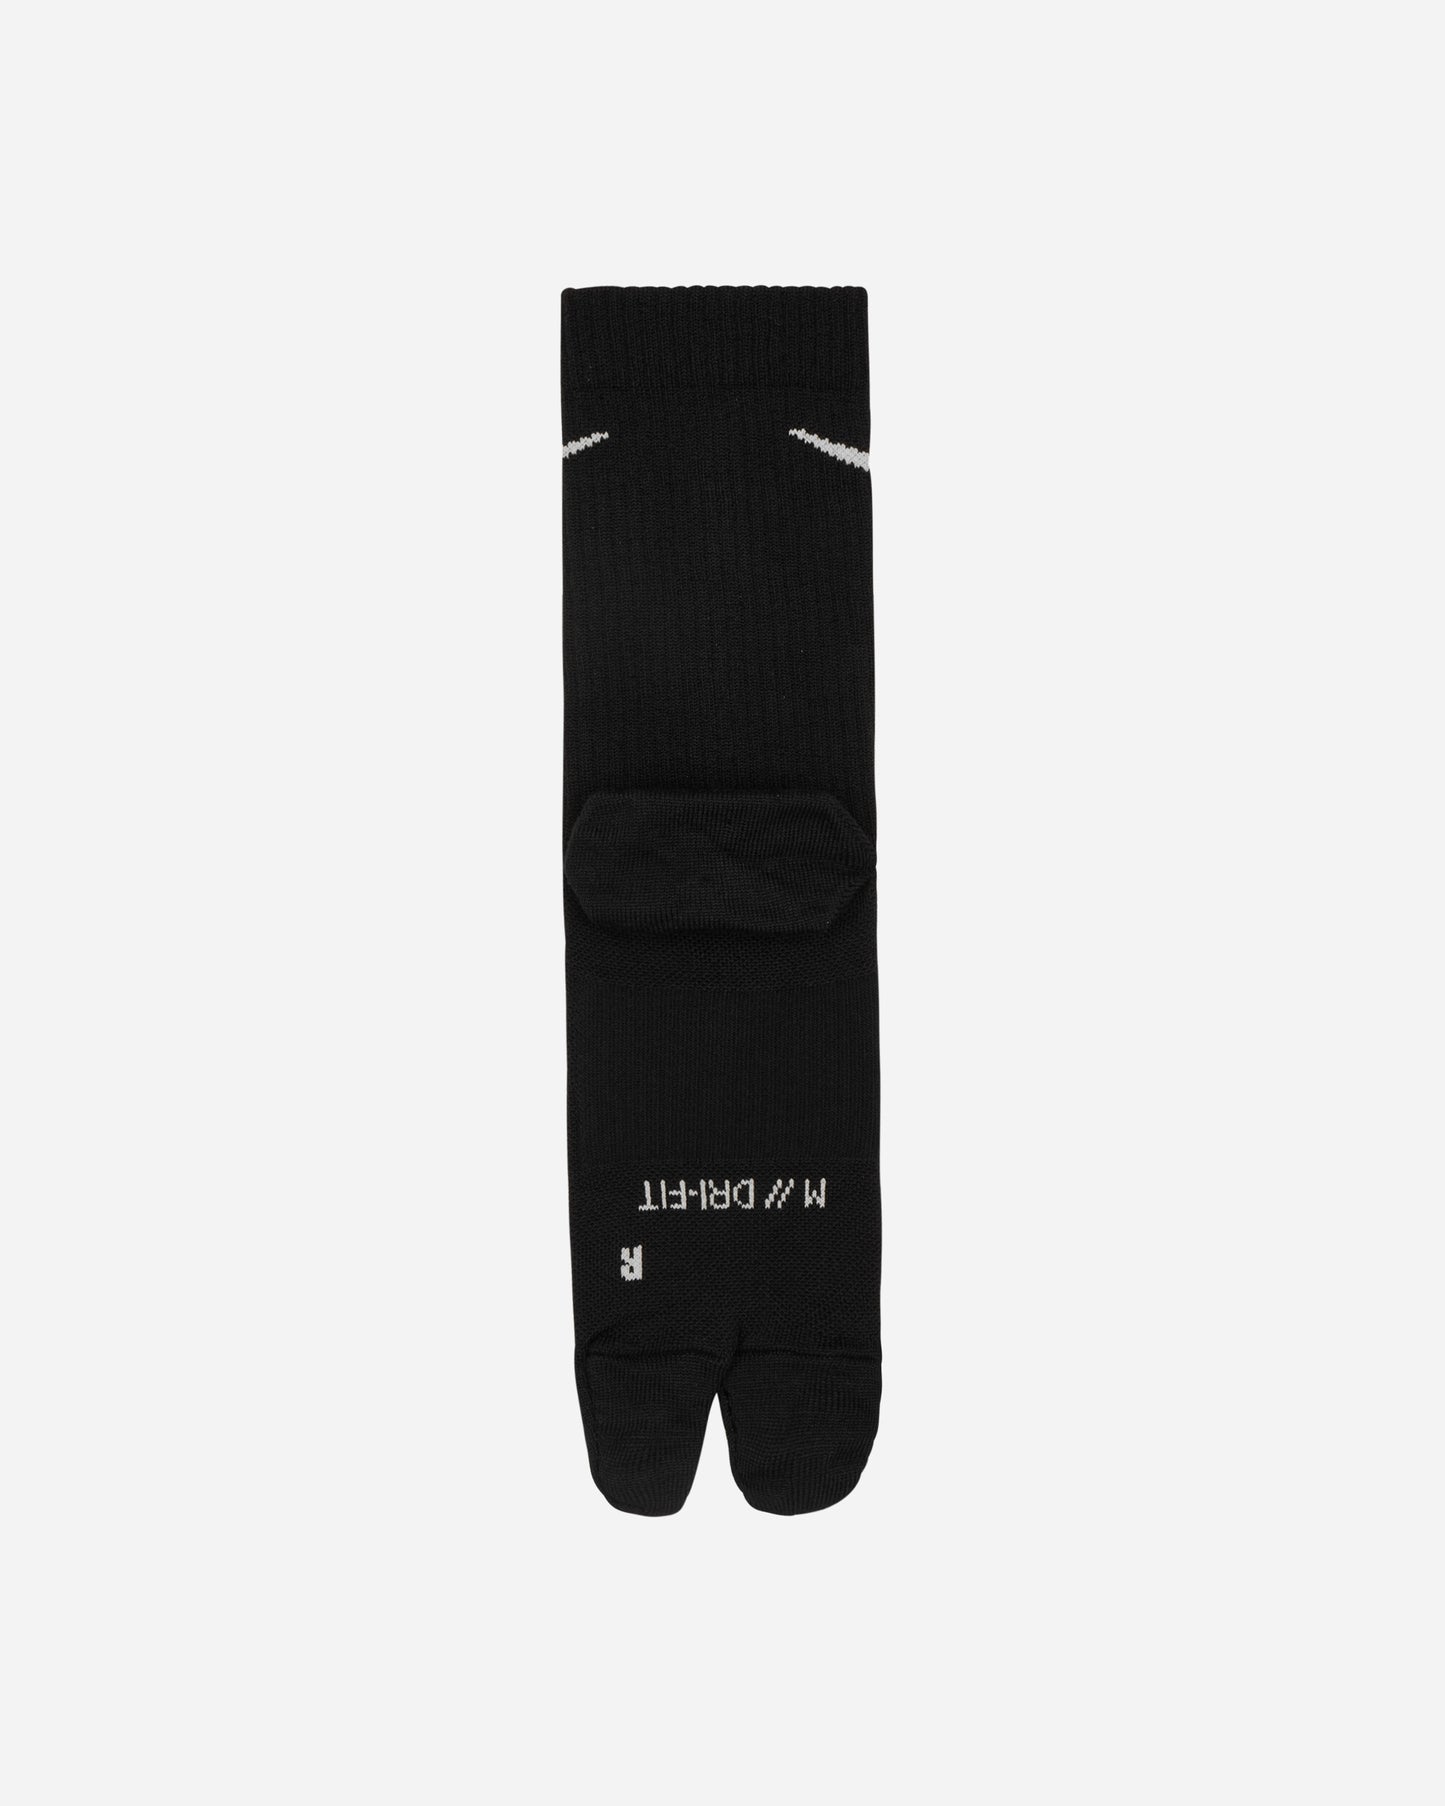 Nike U Nk Ed  Pls Ltwt Crw 160 Tab Black/White Underwear Socks DX1158-010